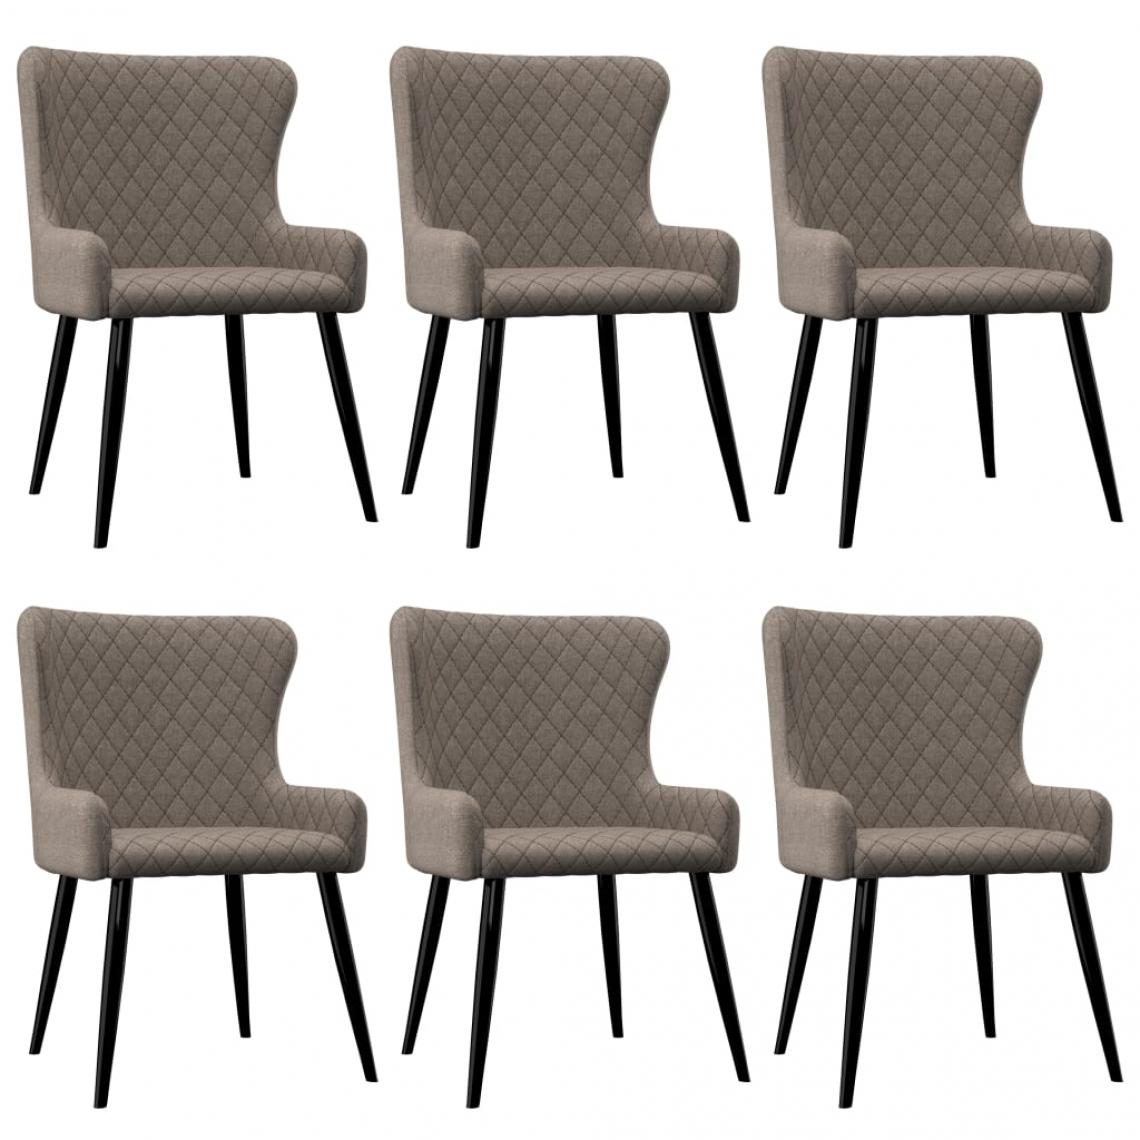 Decoshop26 - Lot de 6 chaises de salle à manger cuisine design classique tissu taupe CDS022860 - Chaises